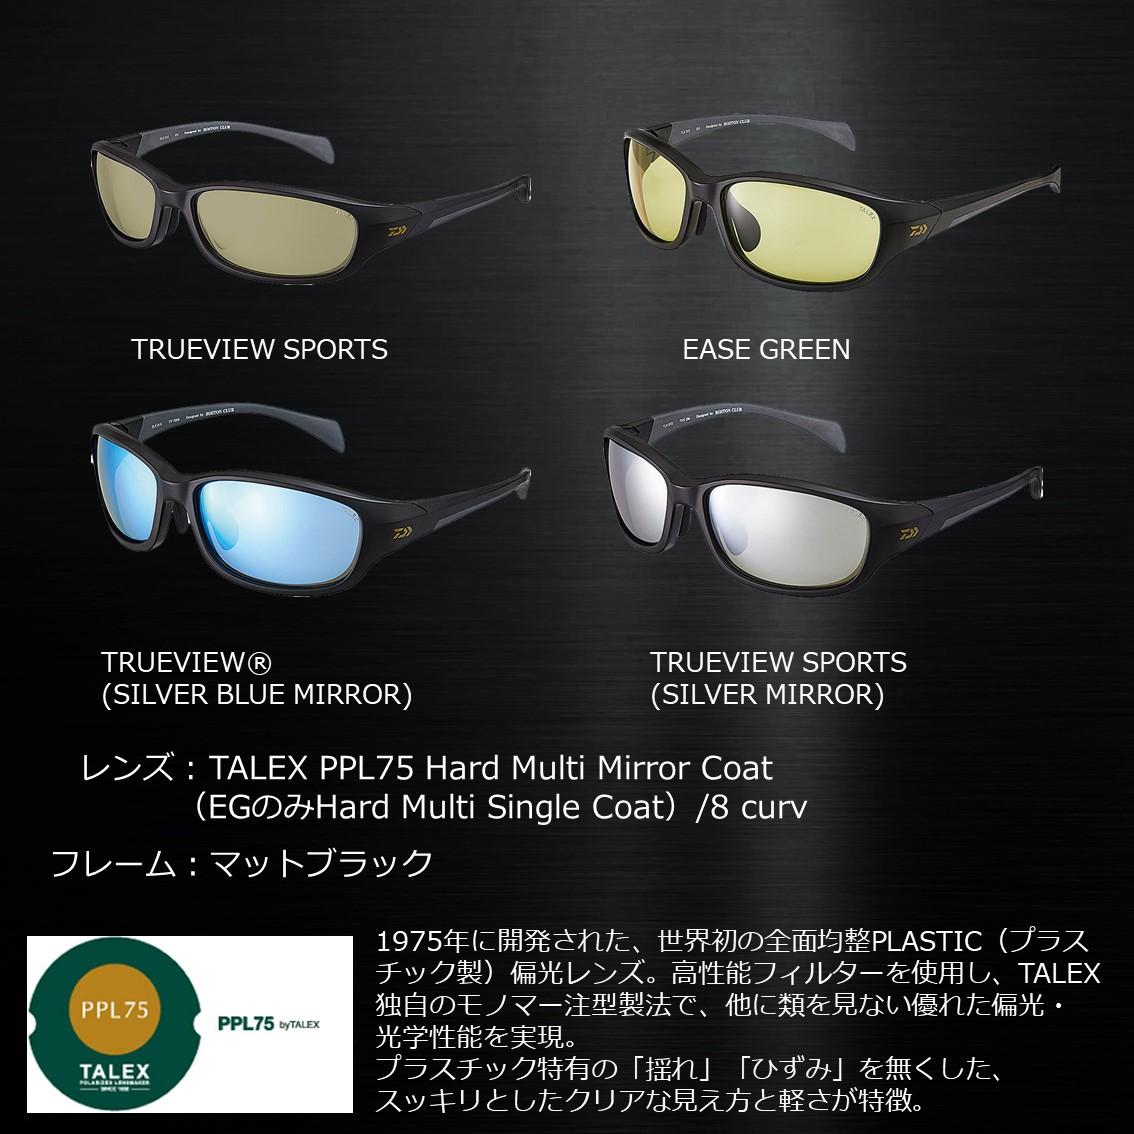 ダイワ タレックス 偏光グラス トゥルービュースポーツ TLX015 (偏光サングラス 偏光グラス 釣り メンズ) - 釣り具の販売、通販なら